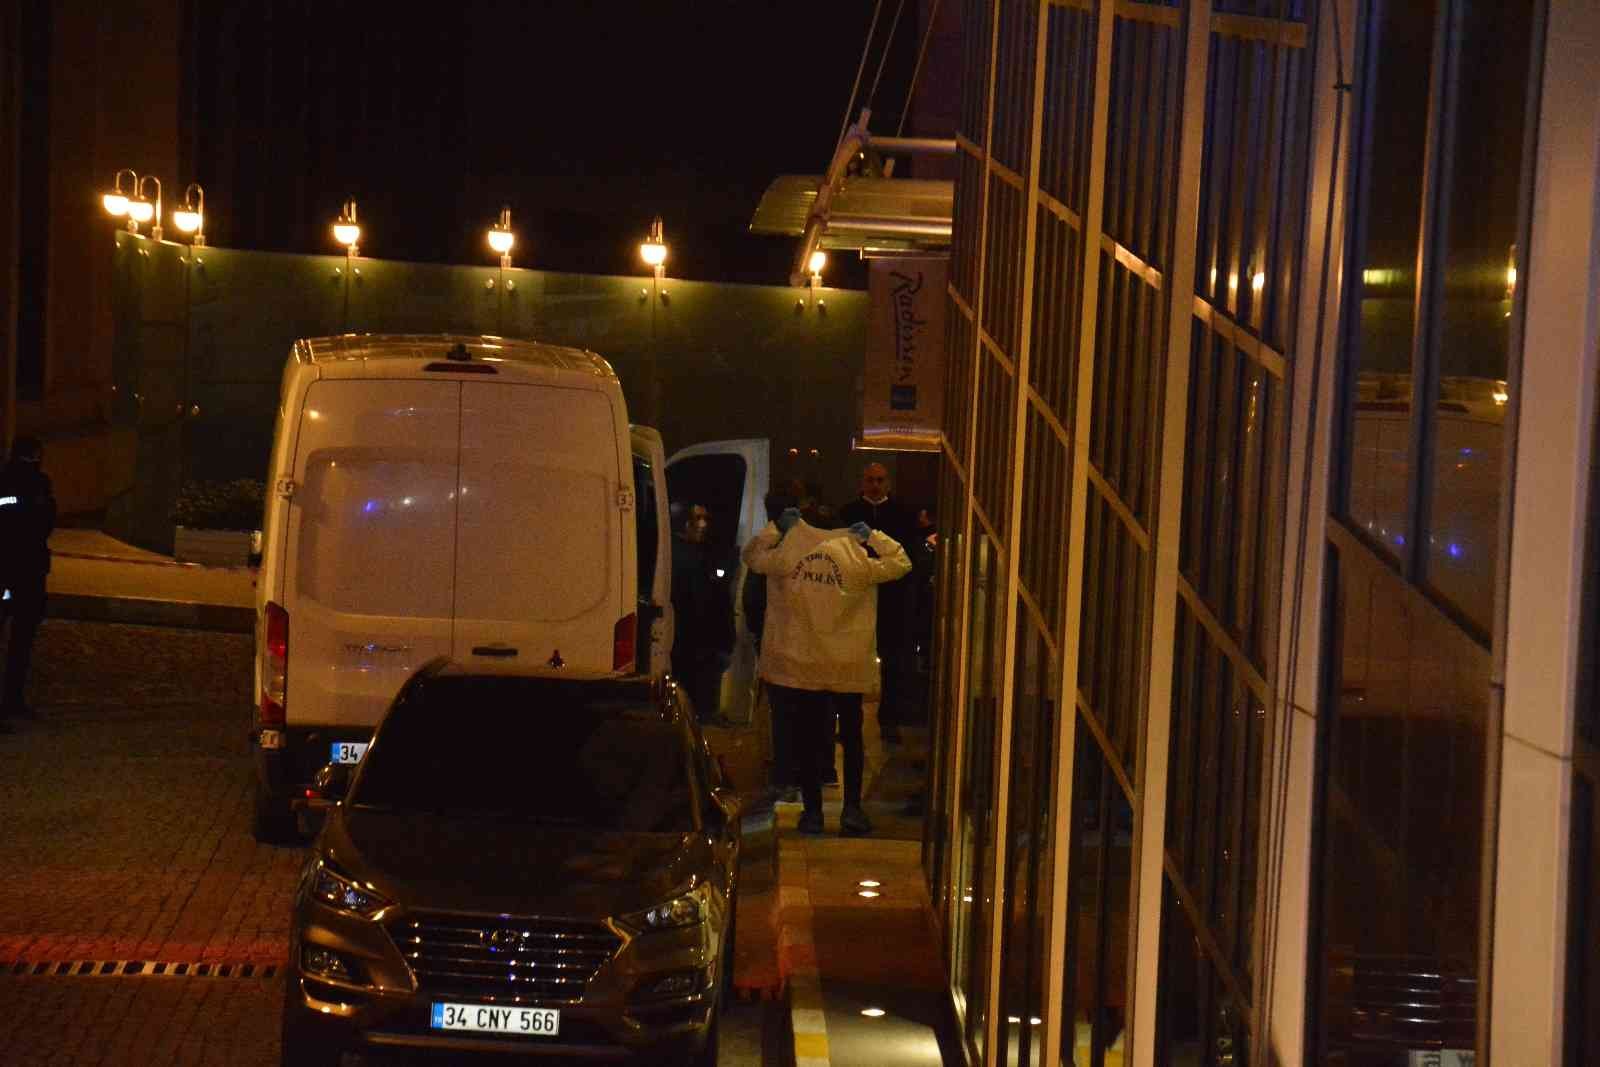 Beşiktaş Ortaköy’de otelin 7’nci katından düşerek ağır yaralanan kadın hastaneye kaldırıldı. Kadının yanındaki erkek ise gözaltına alınarak polis ...